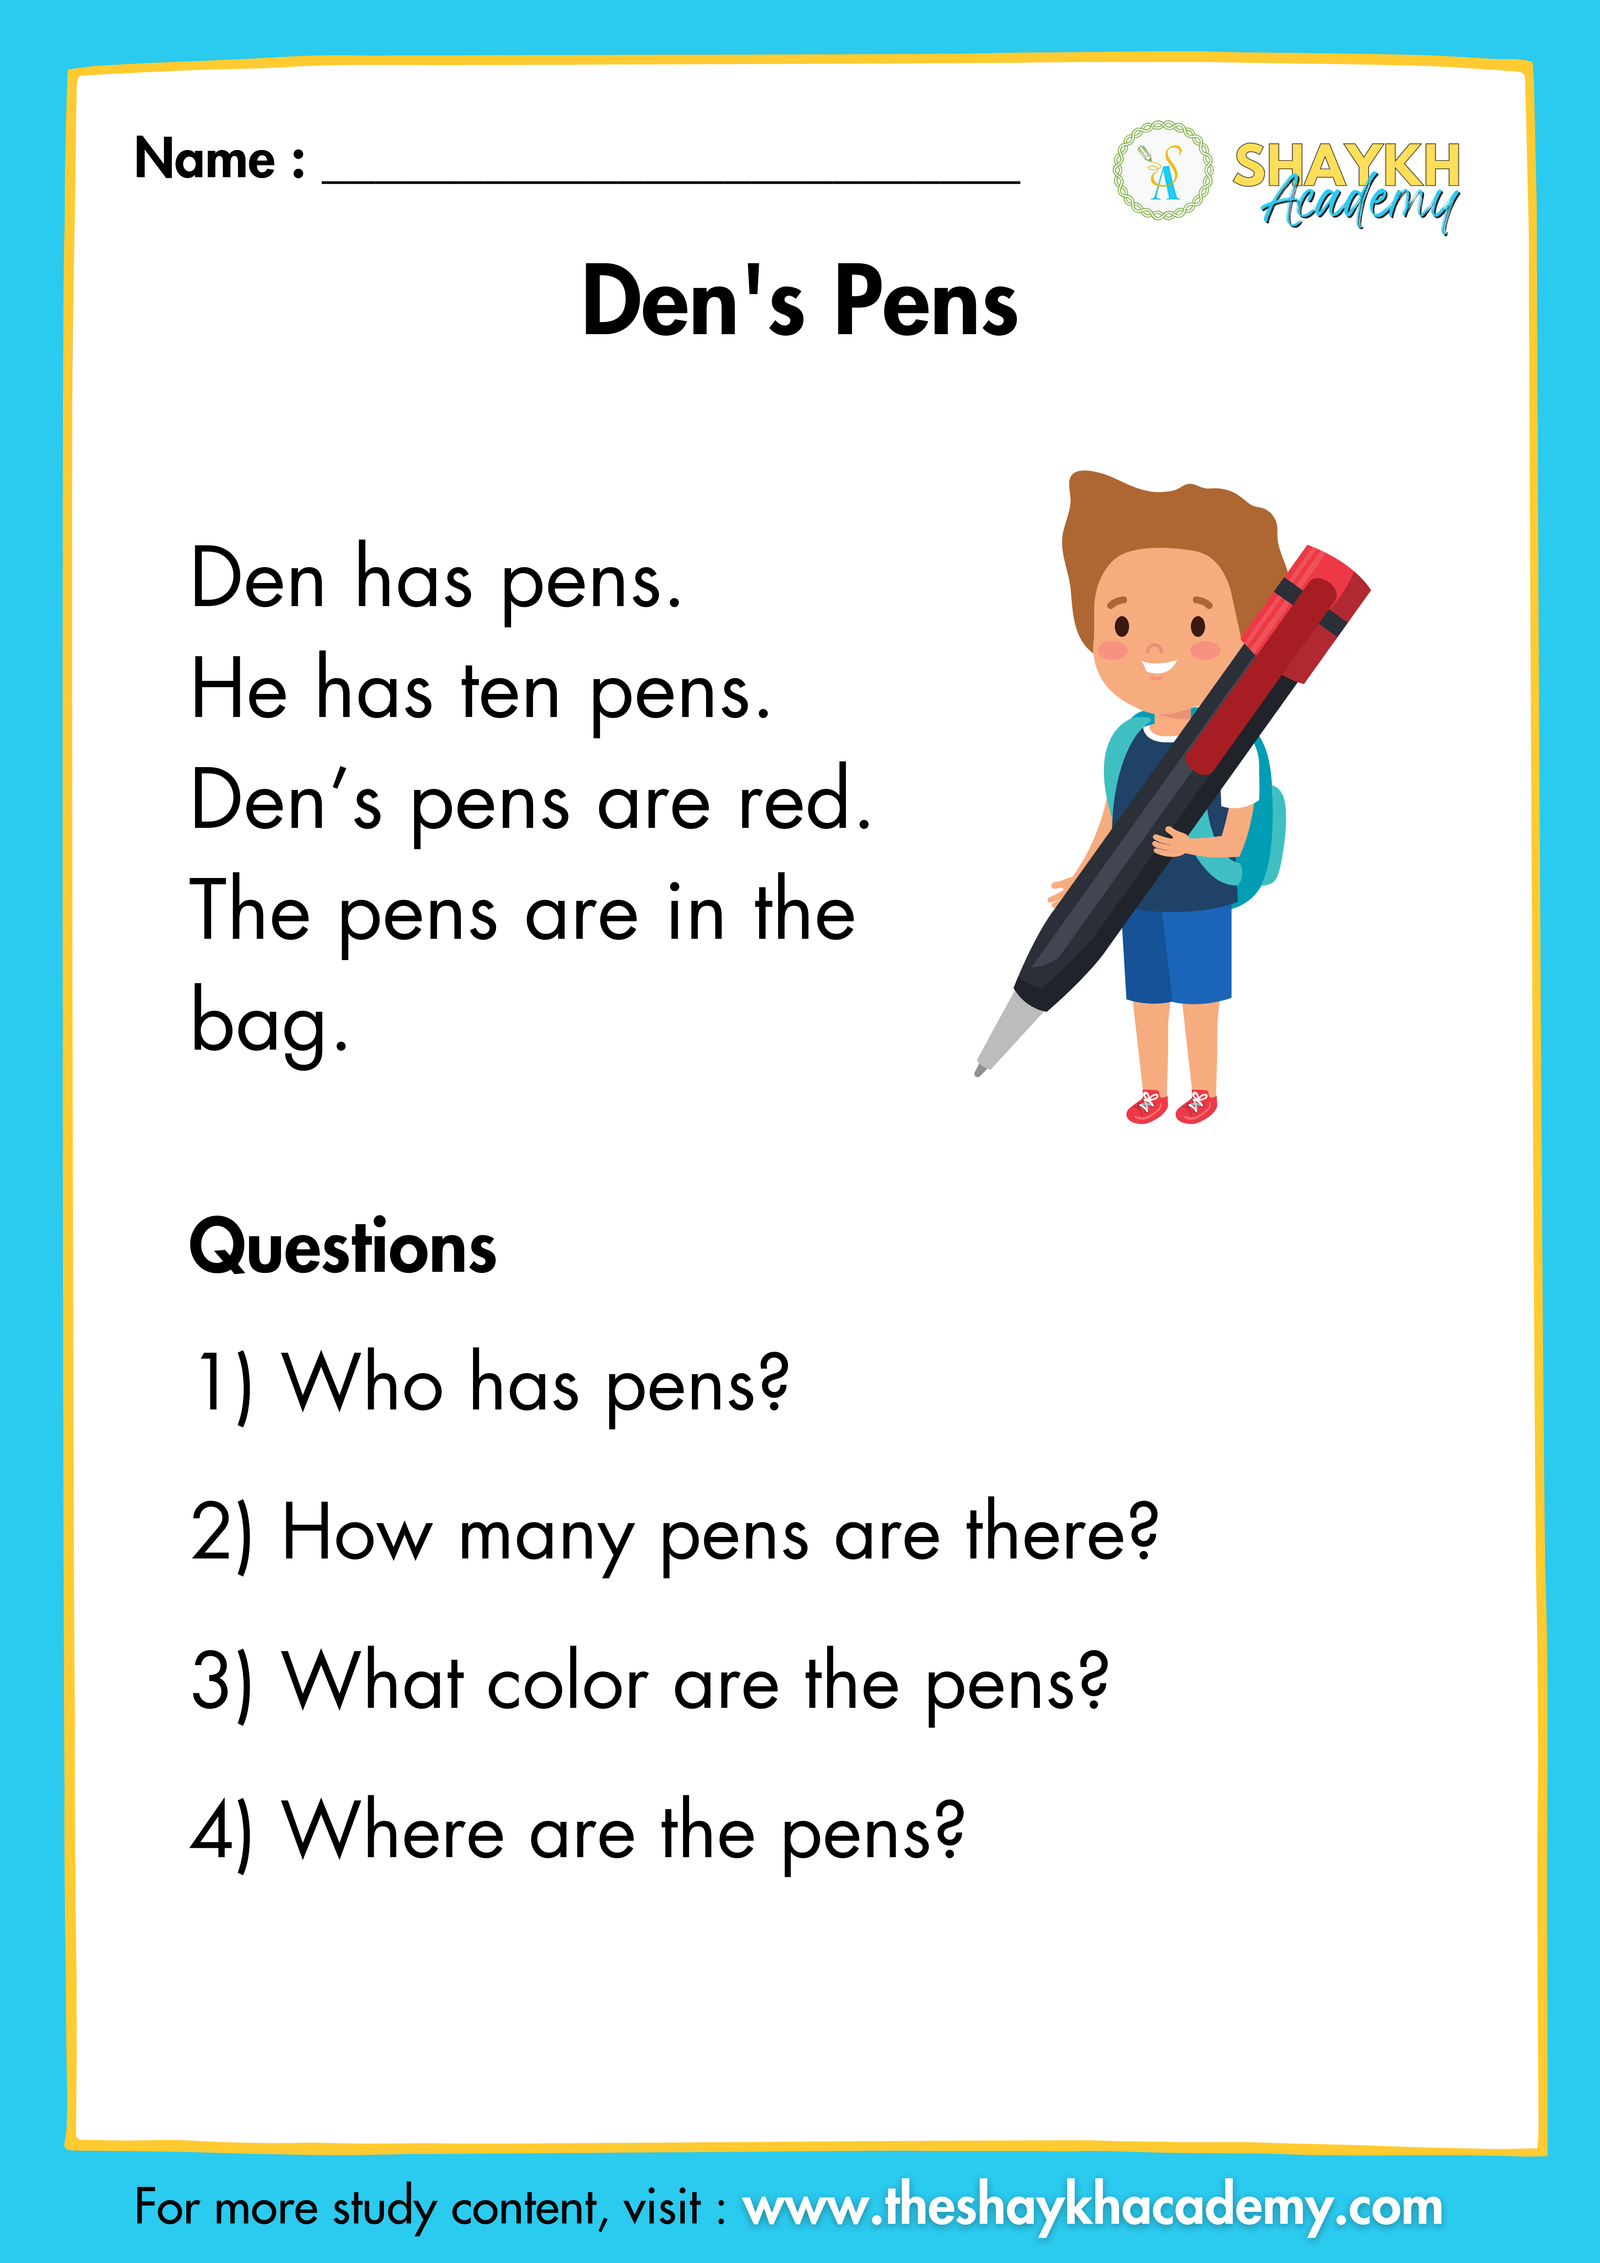 Den's Pens